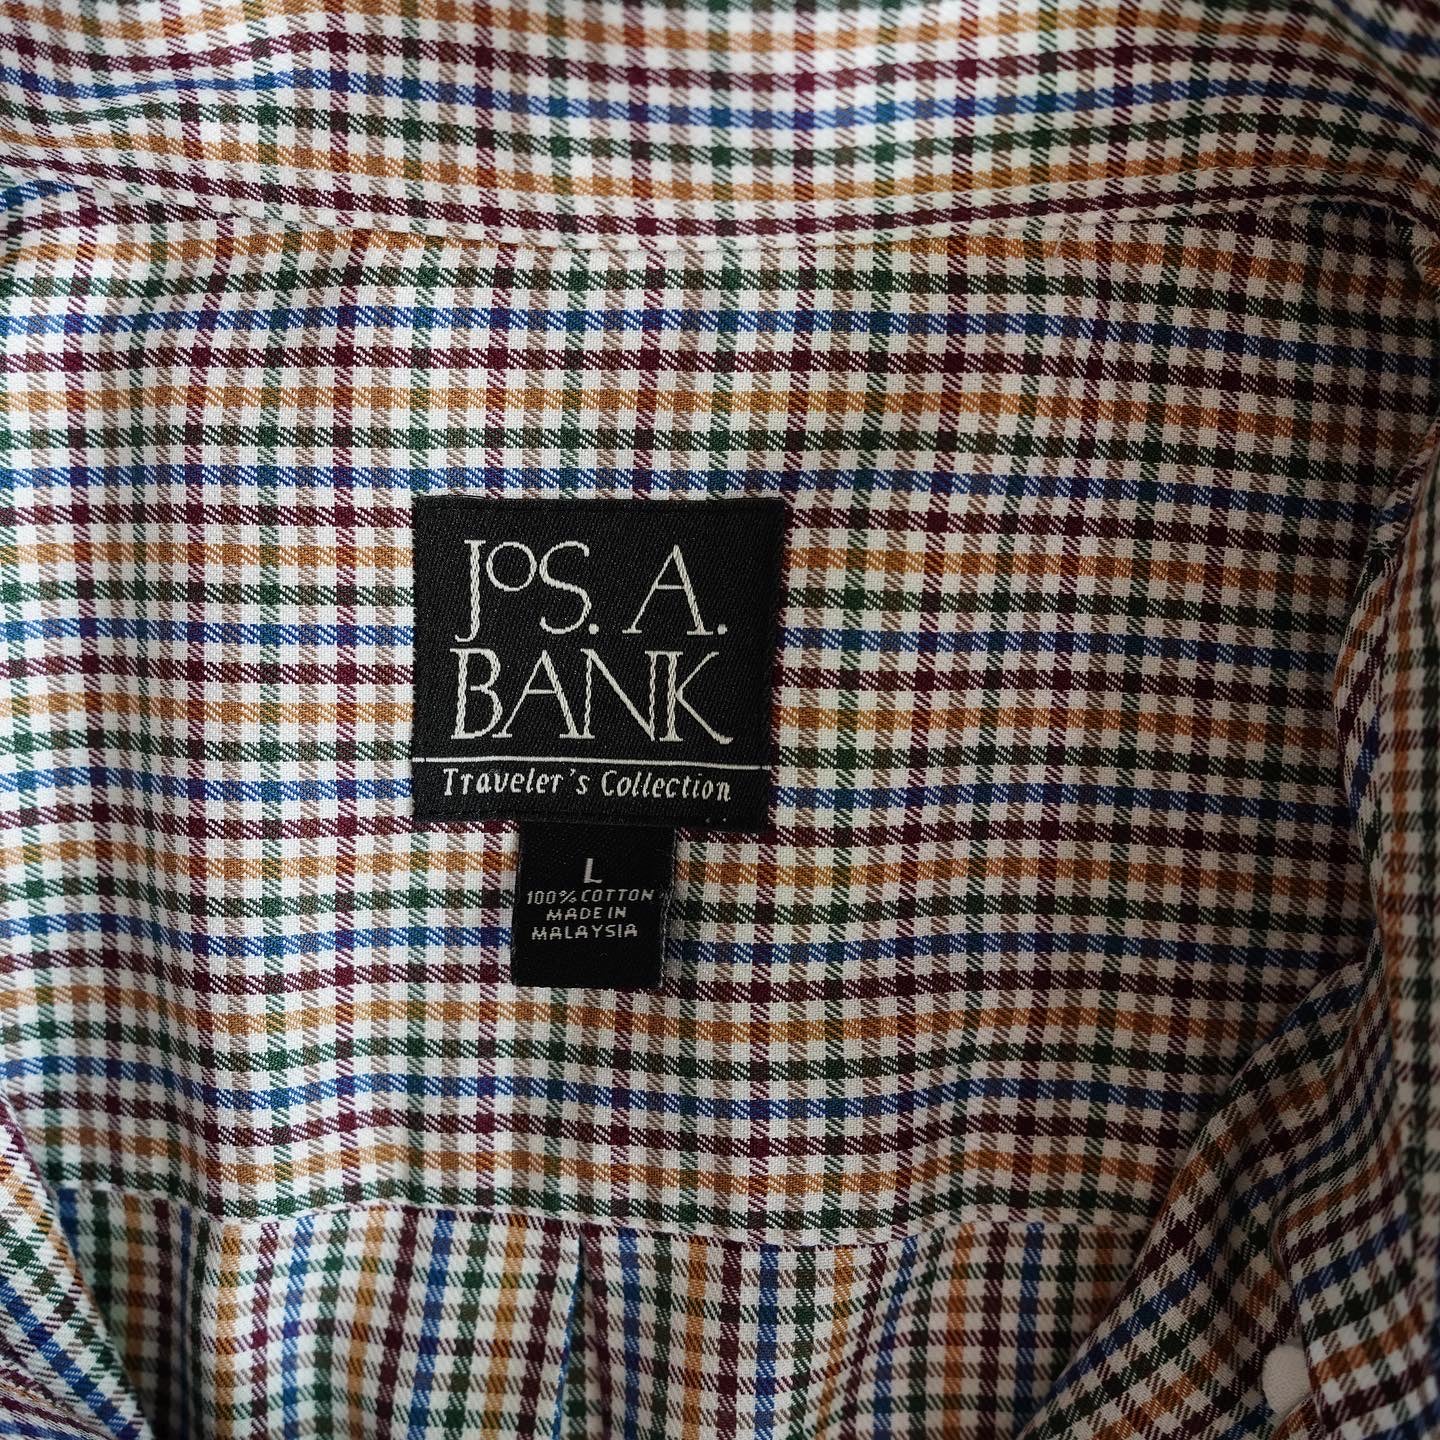 JOS. A. BANK B.D. Multi Color Plaid Shirt